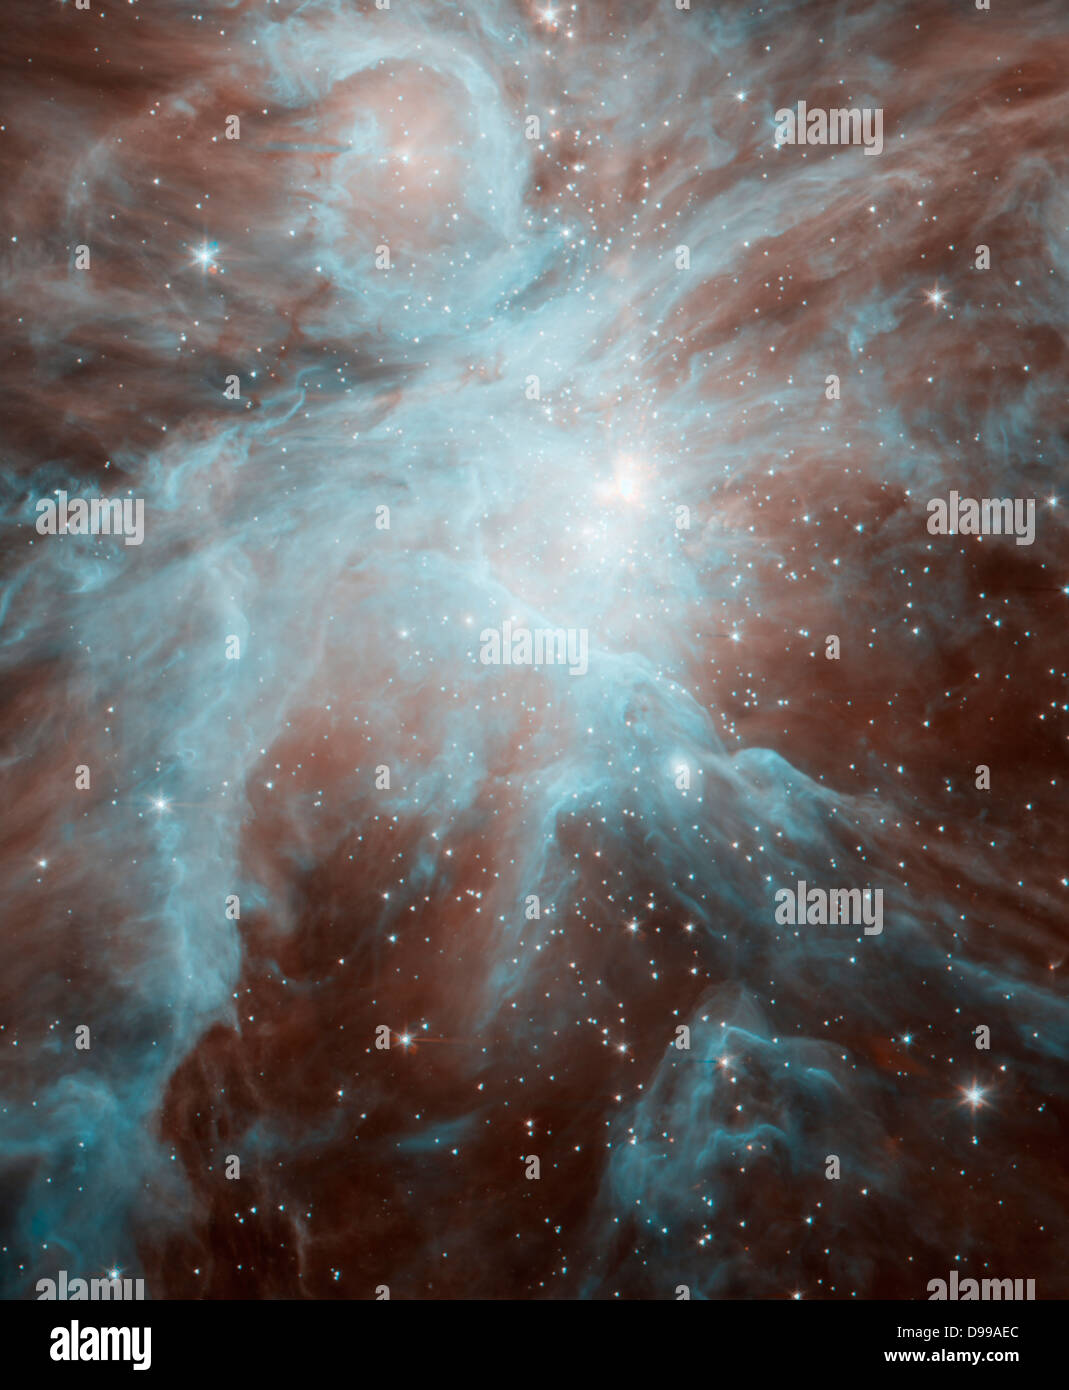 Dieses Bild zeigt den Orion-Nebel, einen Nebel, in denen Sterne geboren werden. Spitzer. Stockfoto